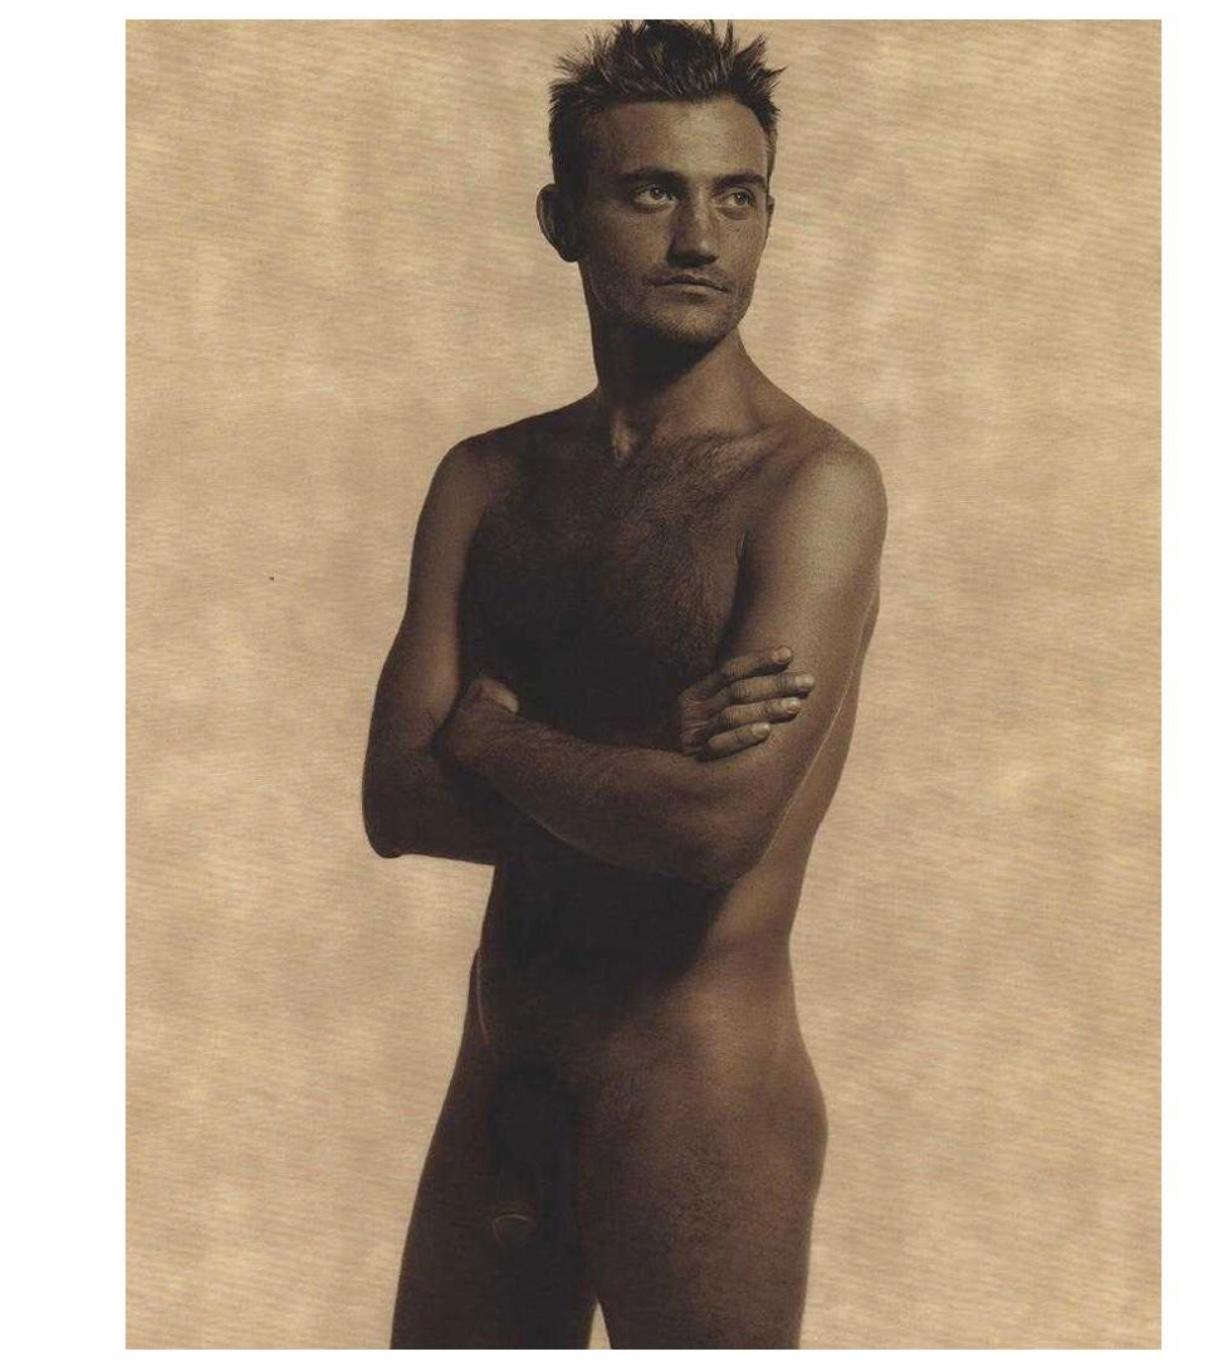 Magnifique tirage photo de Max Delorme réalisé par l'emblématique photographe et créateur de mode Karl Lagerfeld. Image capturée et photo-lithographie en terre d'ombre satinée imprimée en 1997. Mesures : 10.75 x 13.25 pouces. Non encadré.
 